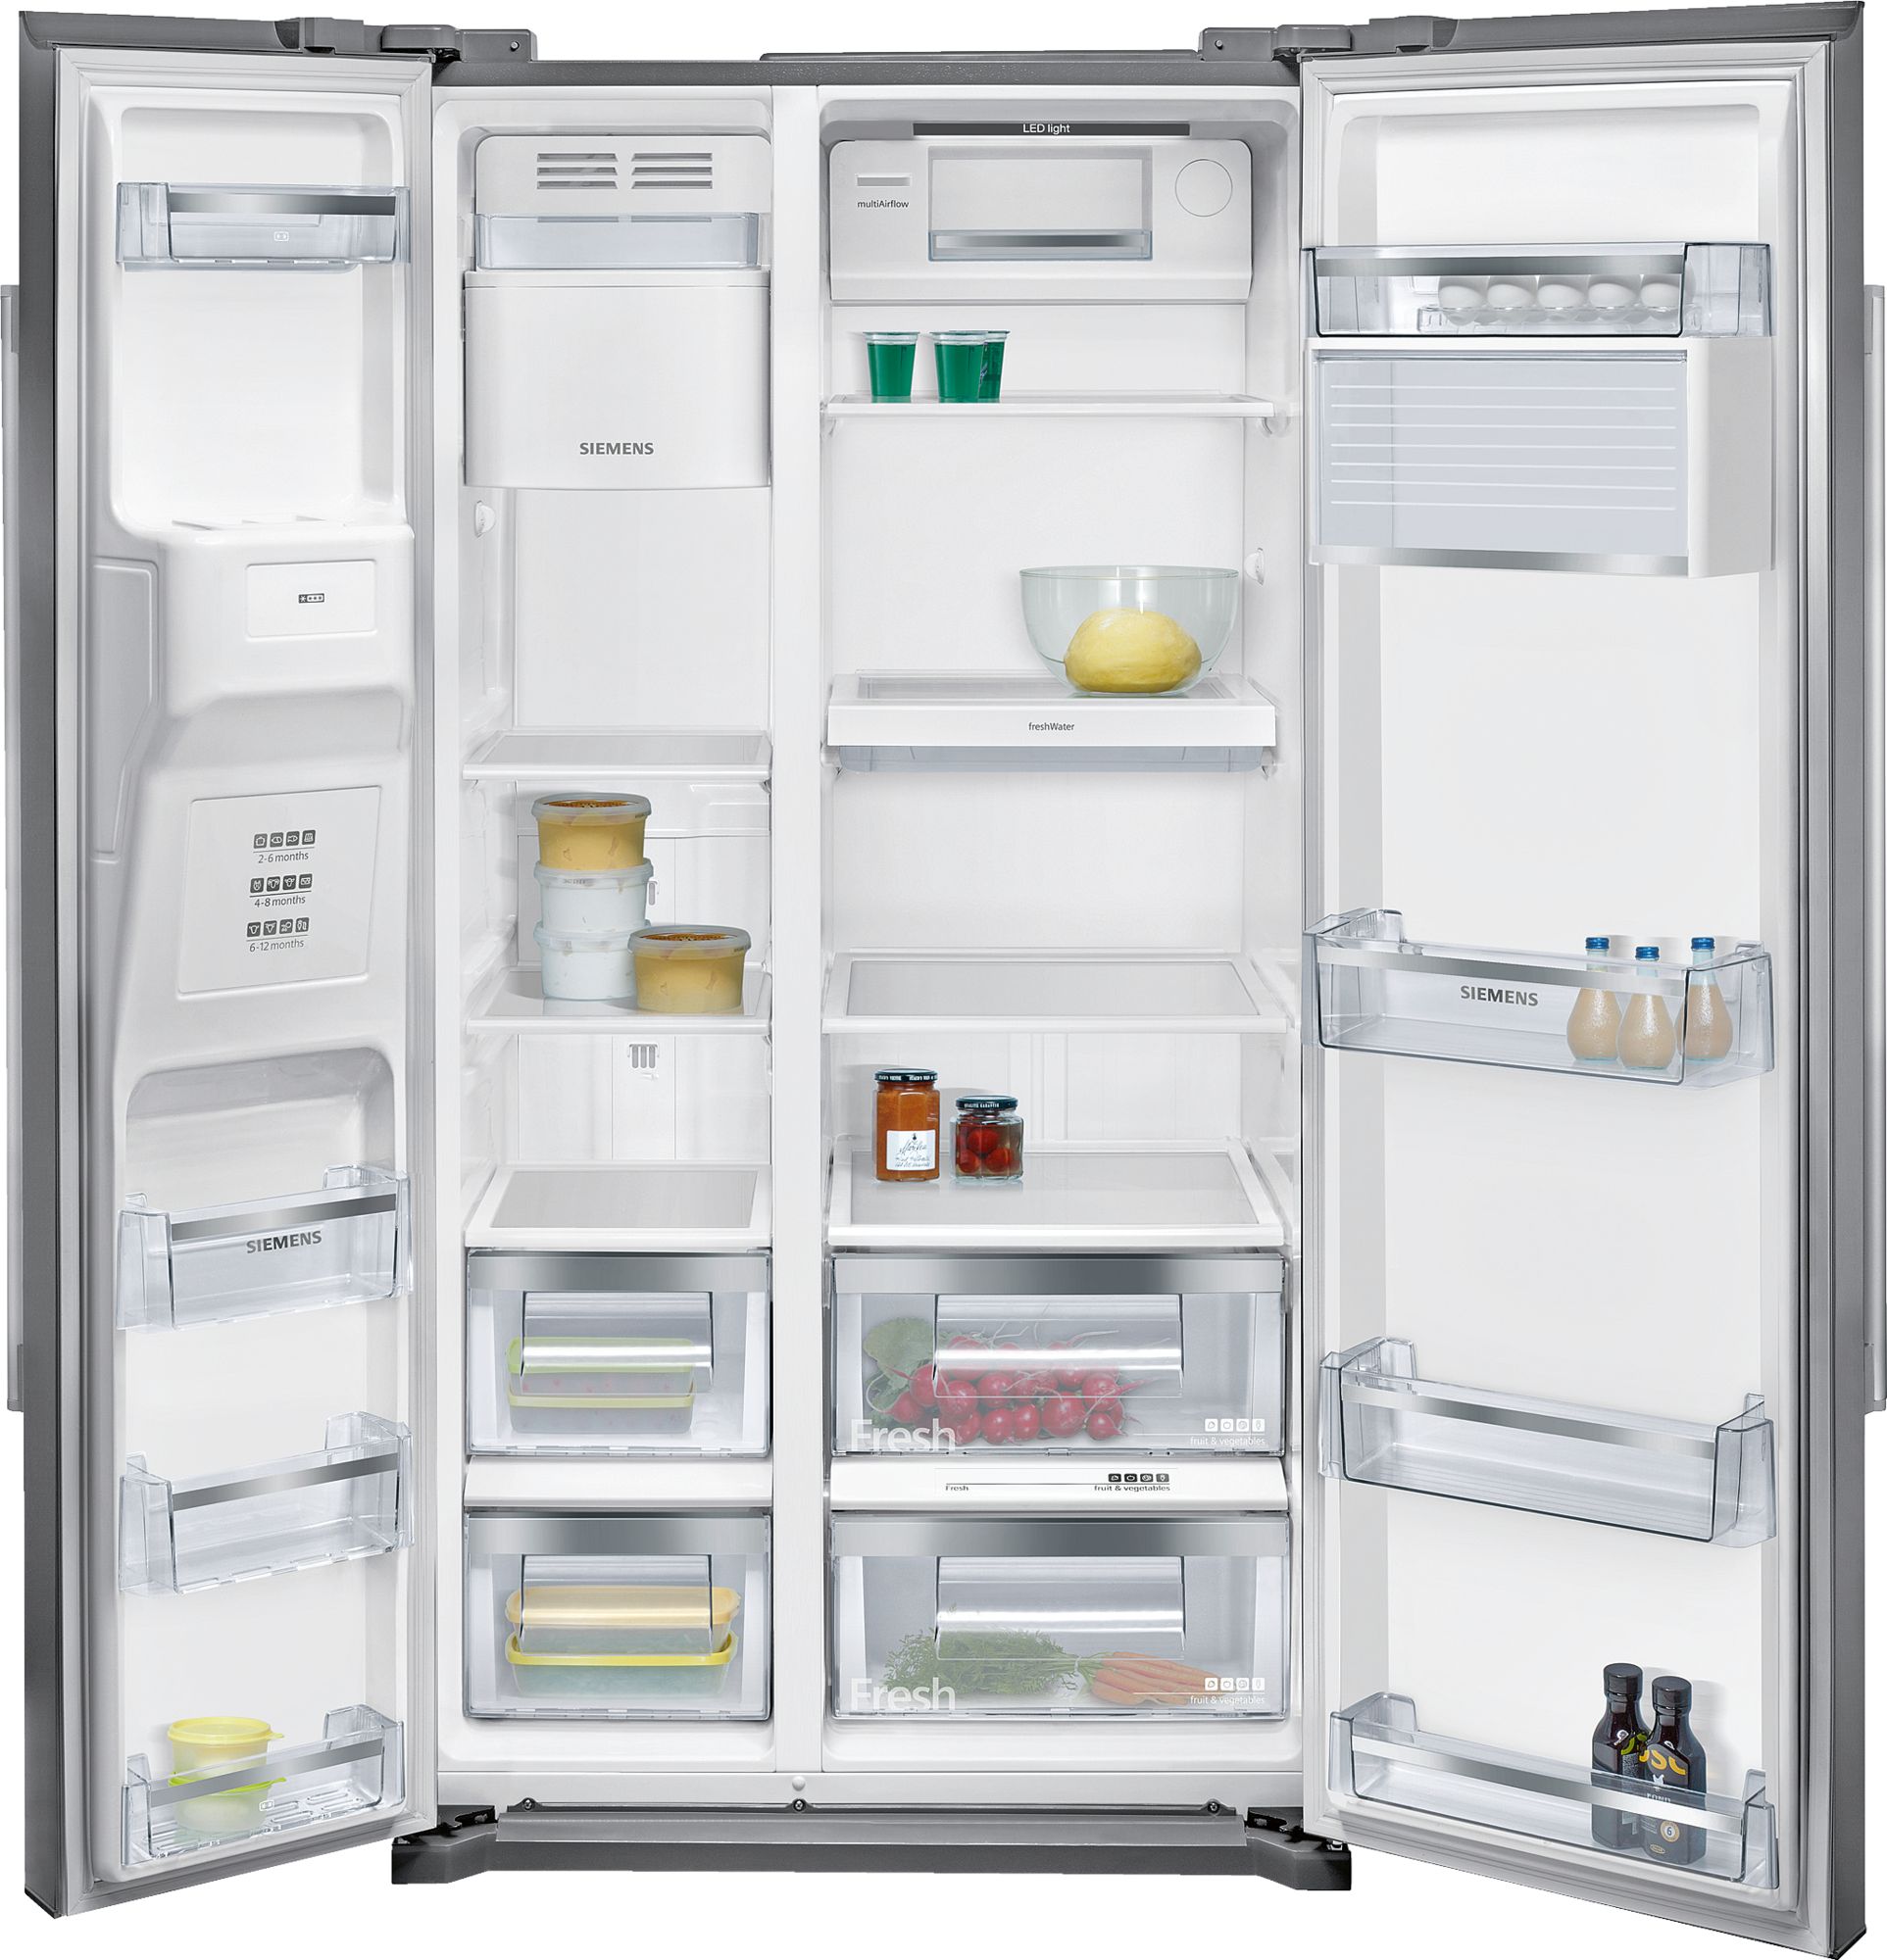 Холодильник двухкамерный купить в москве цена. Холодильник Side-by-Side Bosch kag90ai20. Bosch kad90vb20. Холодильник Bosch kan90vb20r. Холодильник Side-by-Side Bosch kan90vi20r.